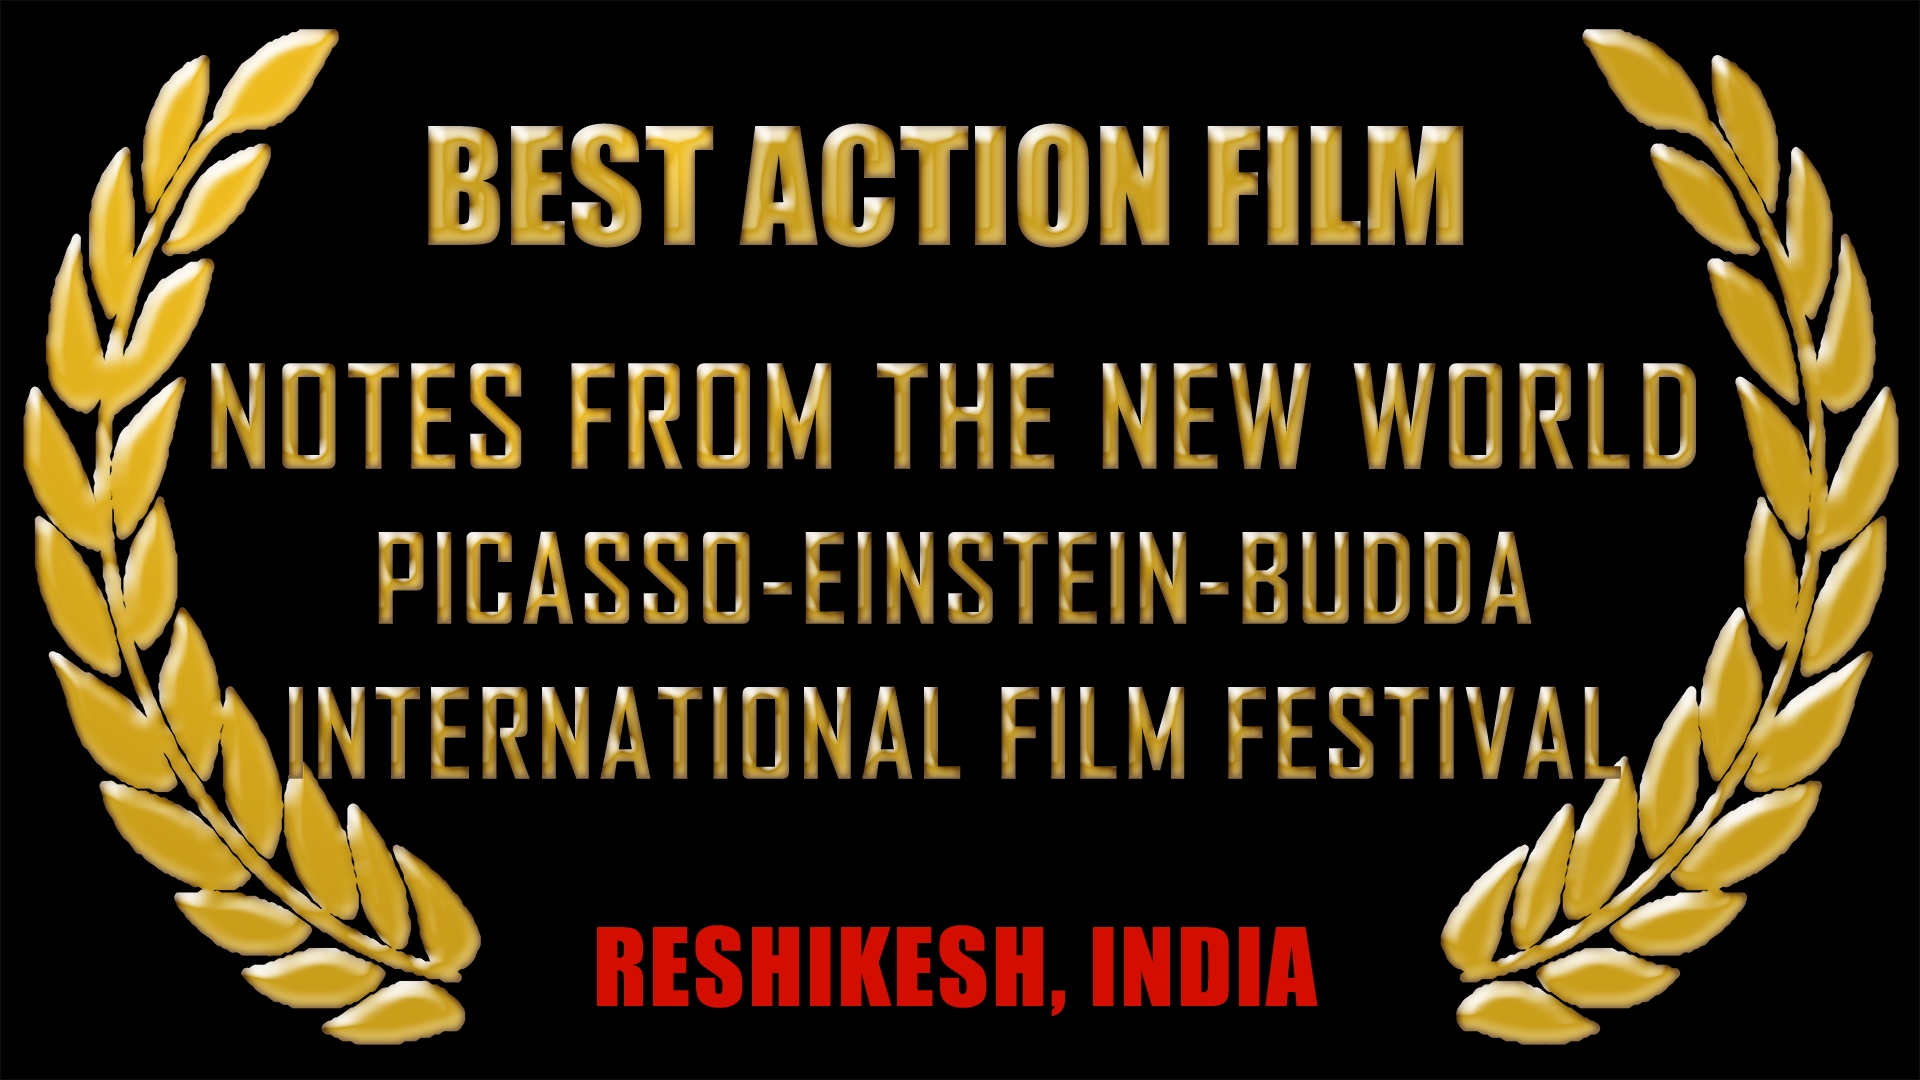 Best Action Film, Reshikesh, India